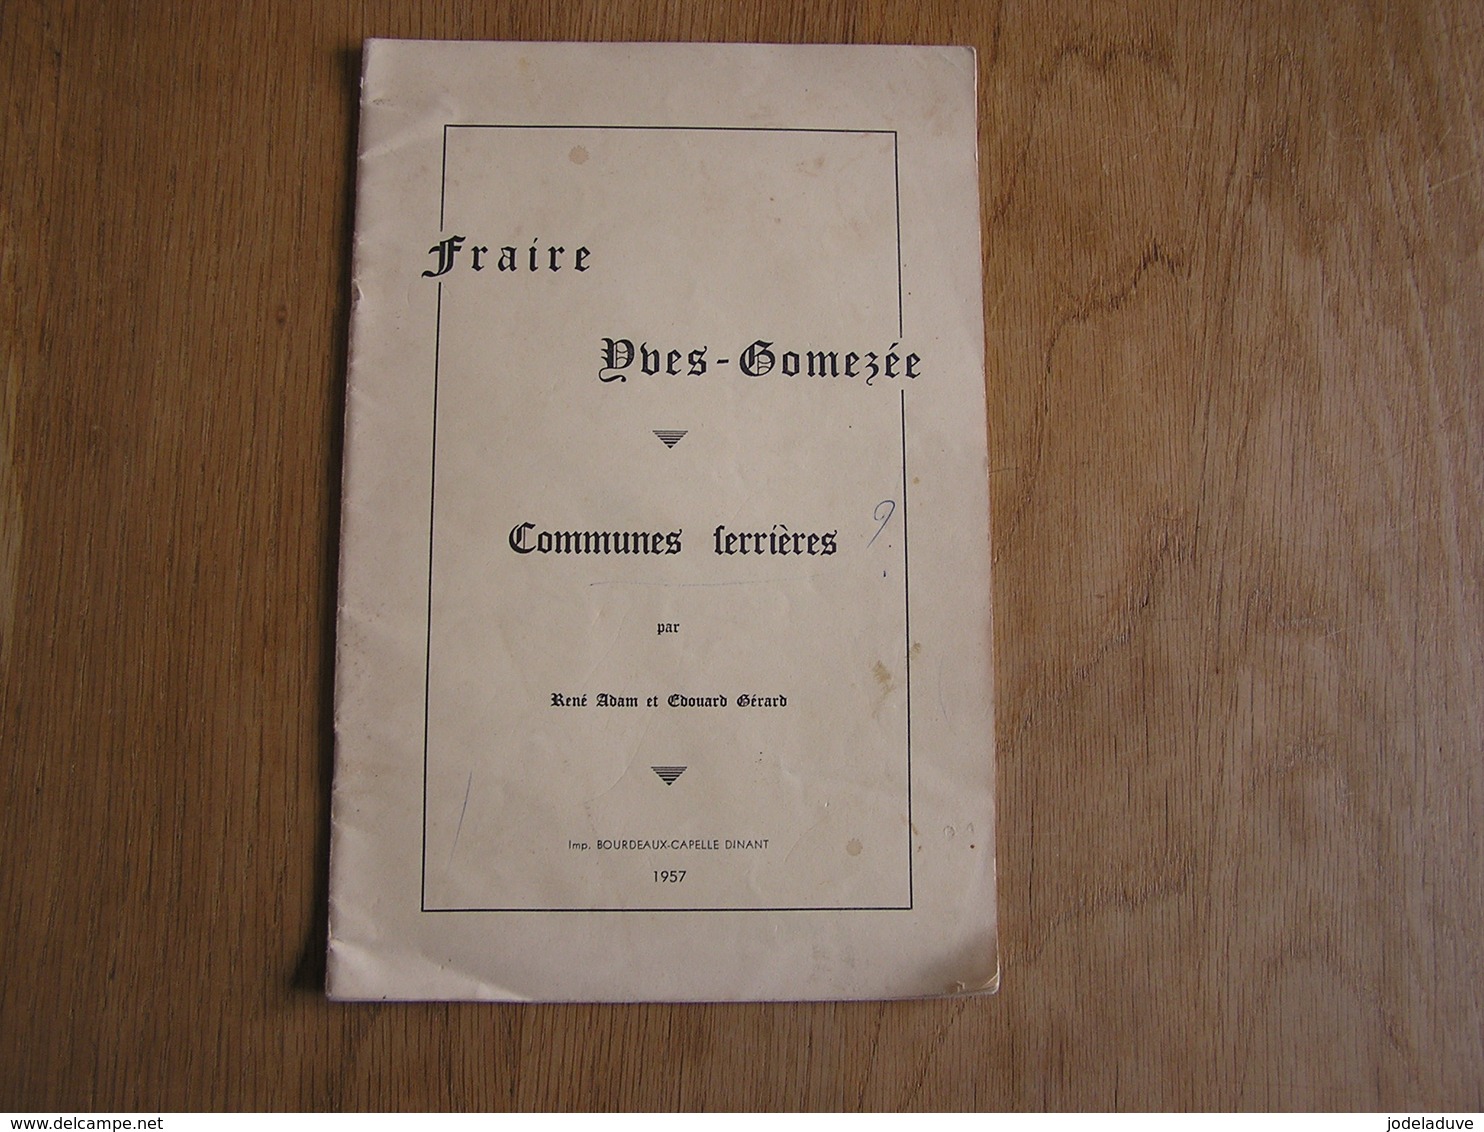 FRAIRE YVES GOMEZEE Communes Ferrières René Adam & Edouard Gérard 1957 Exemplaire N° 141 / 150 Régionalisme Rare ! - Belgique